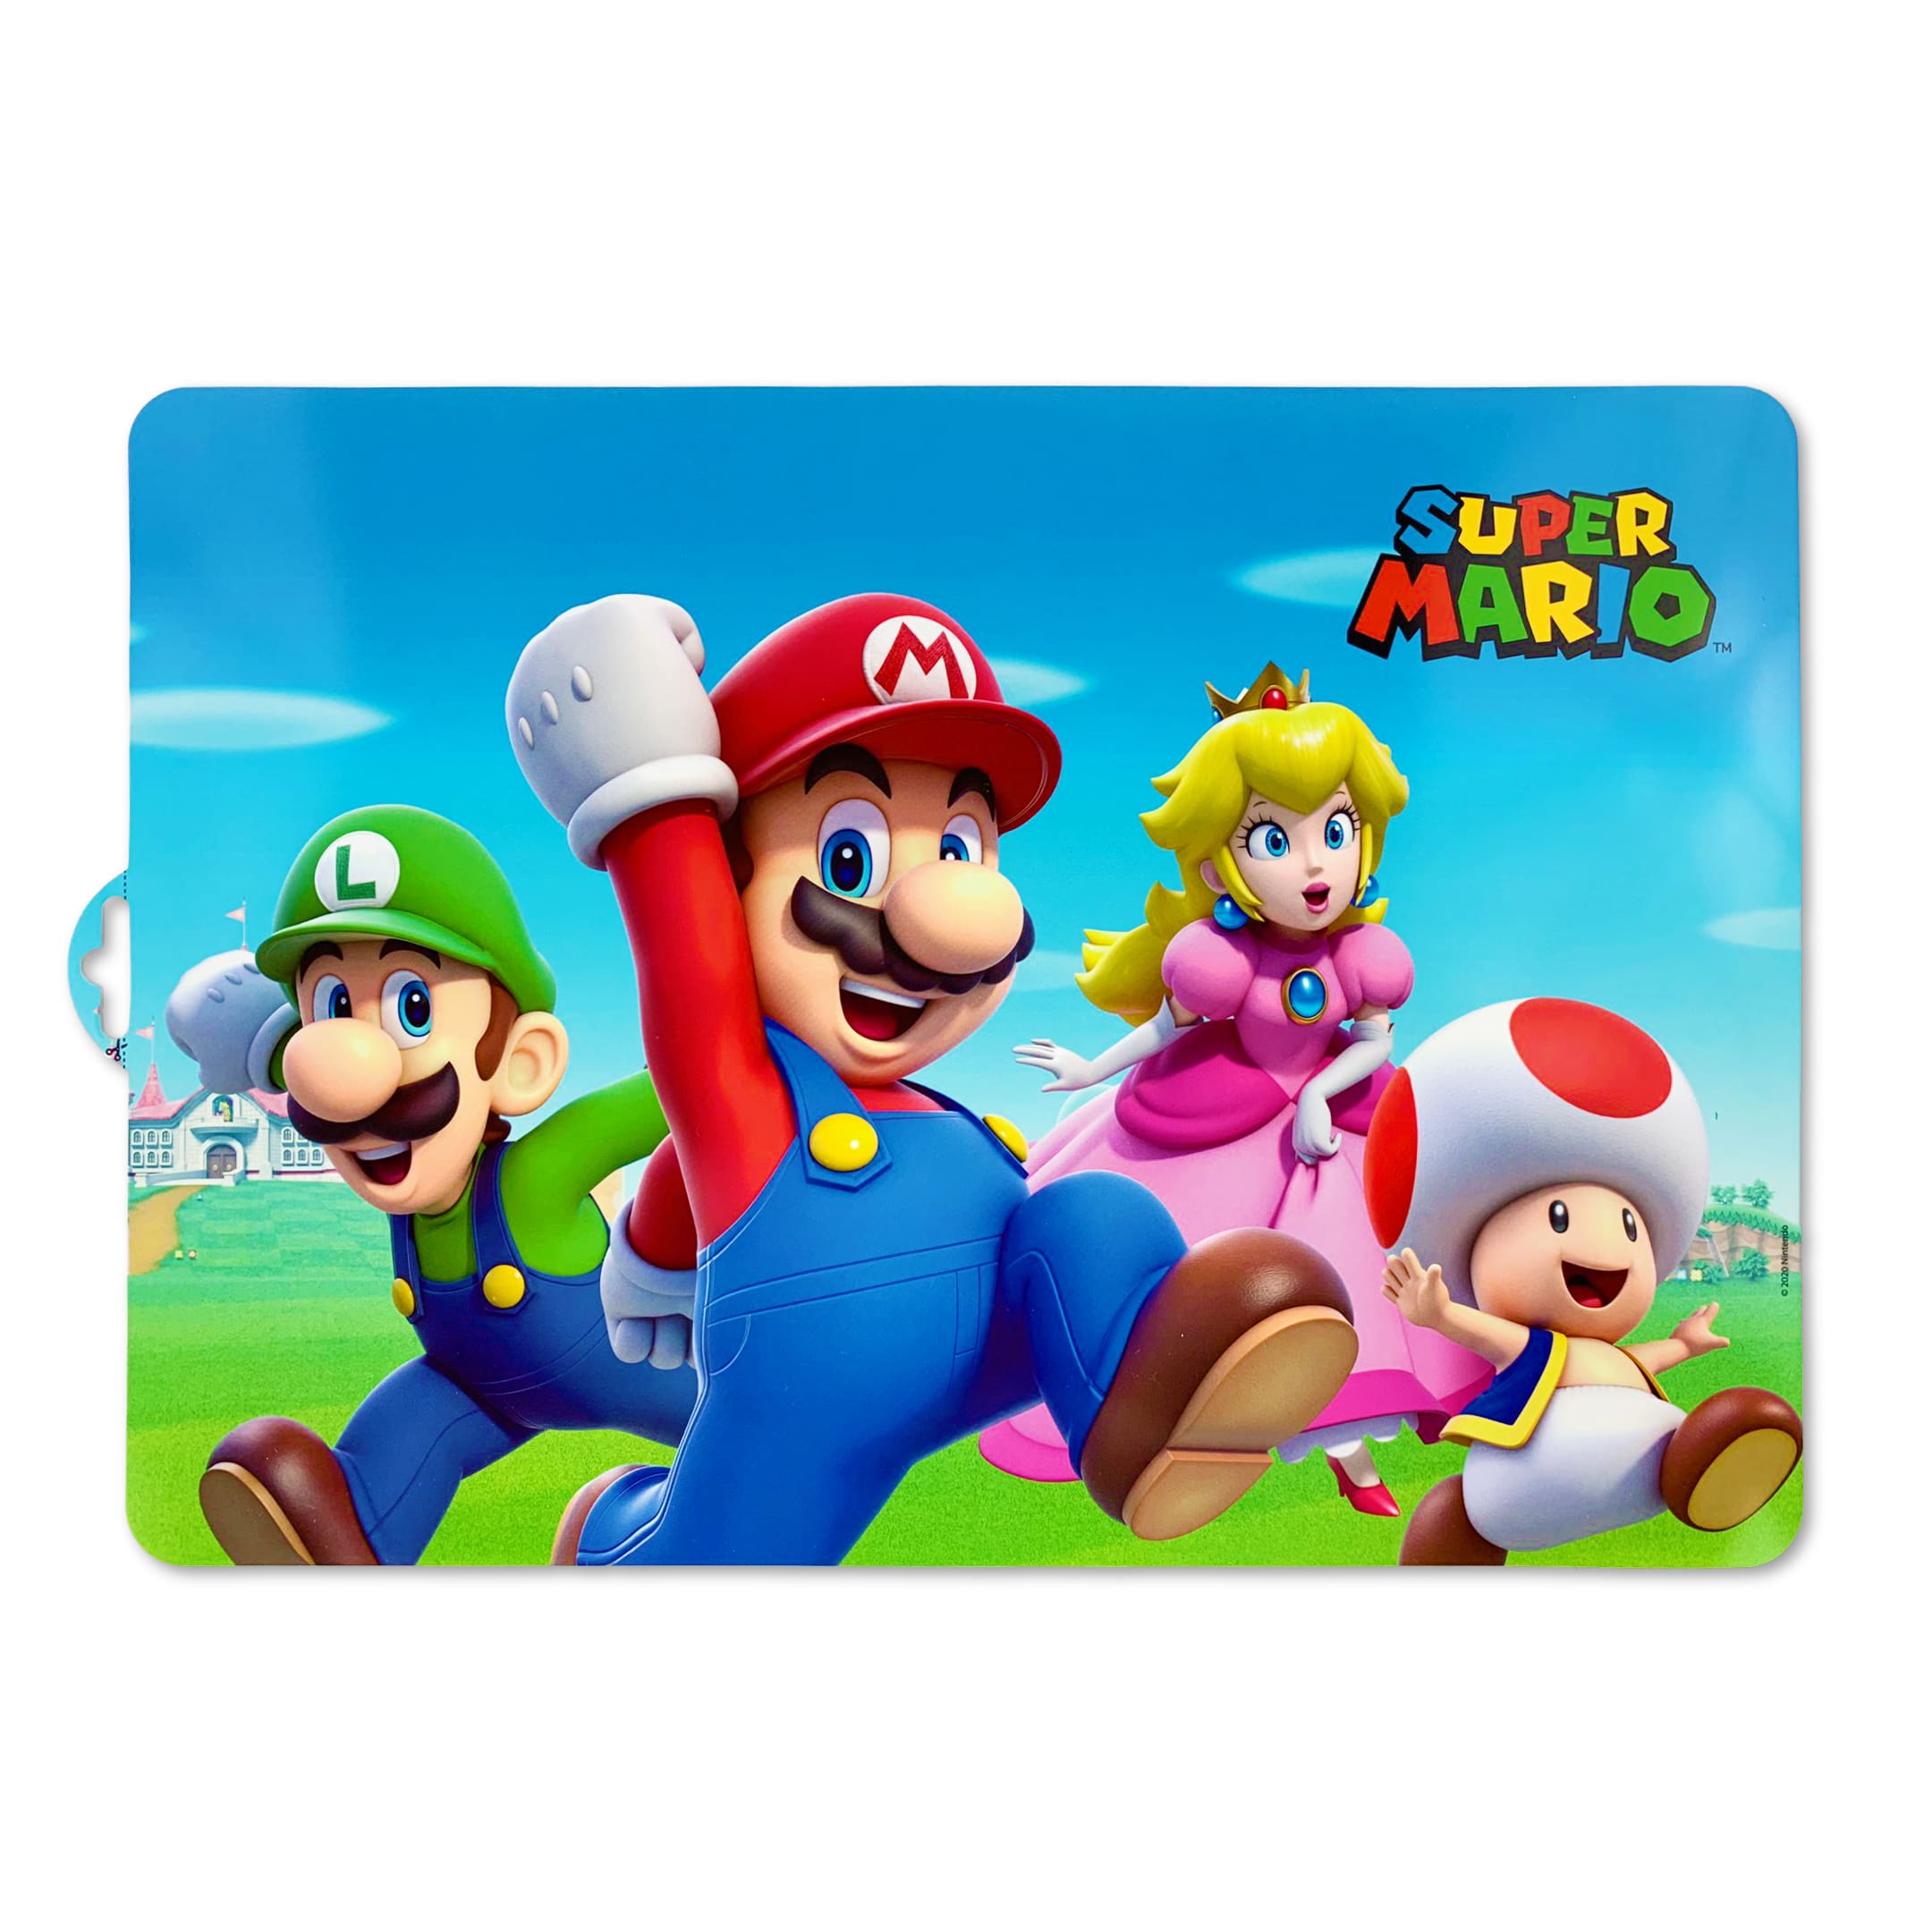 Tovaglietta americana ufficiale Super Mario Nintendo colazione asilo bimbo 4435